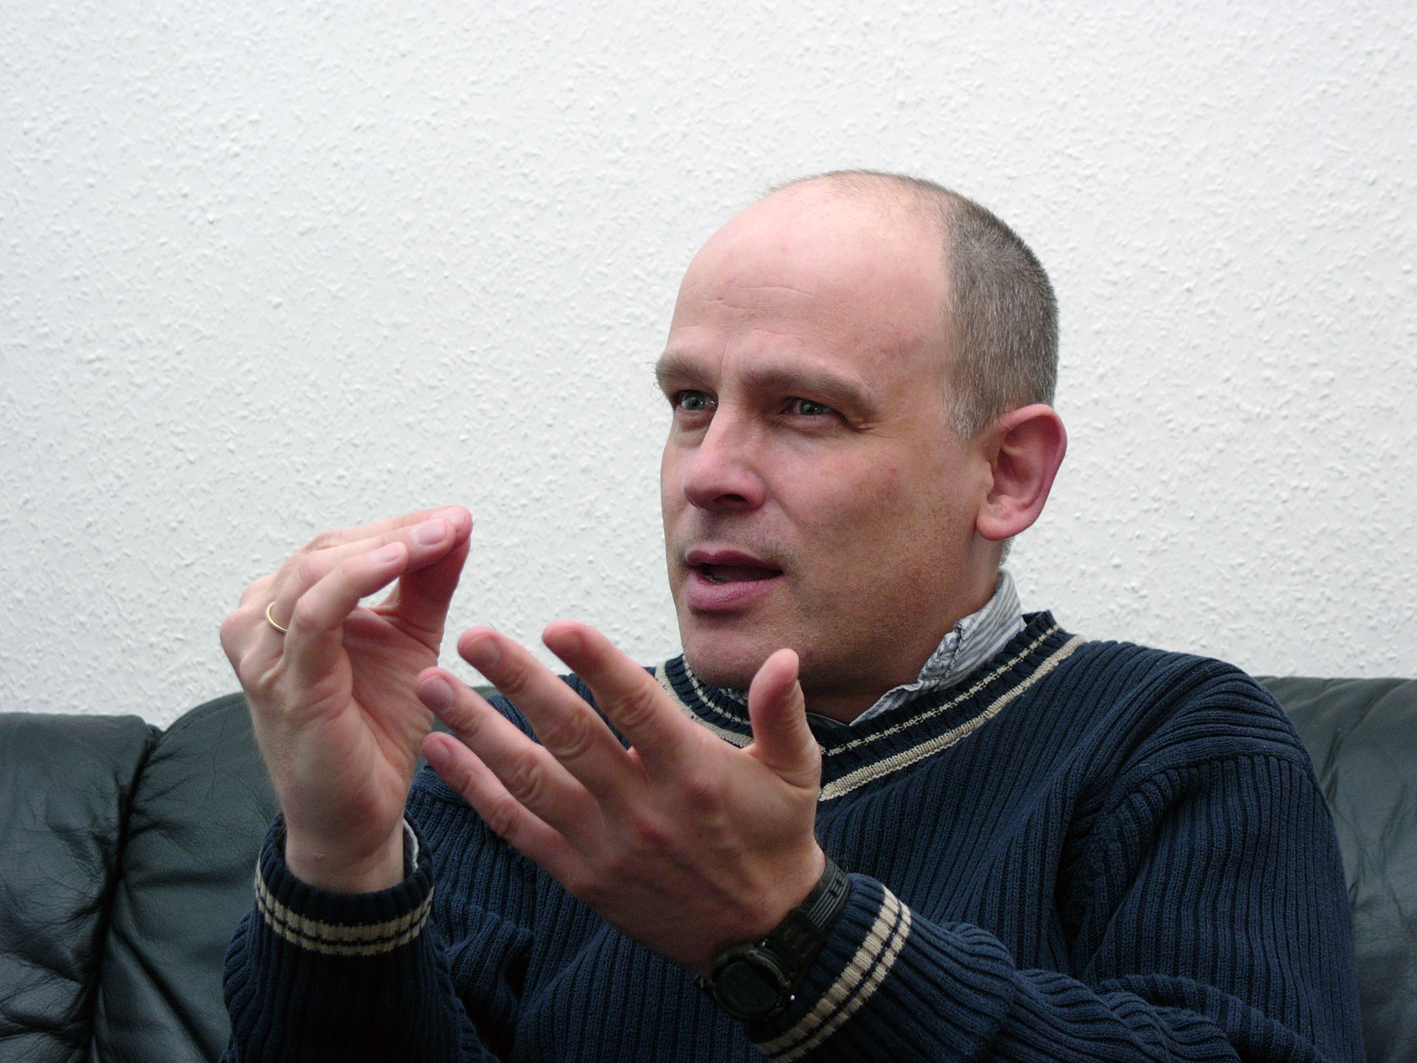 photograph of Joachim Pense, taken by Heiner Thiel